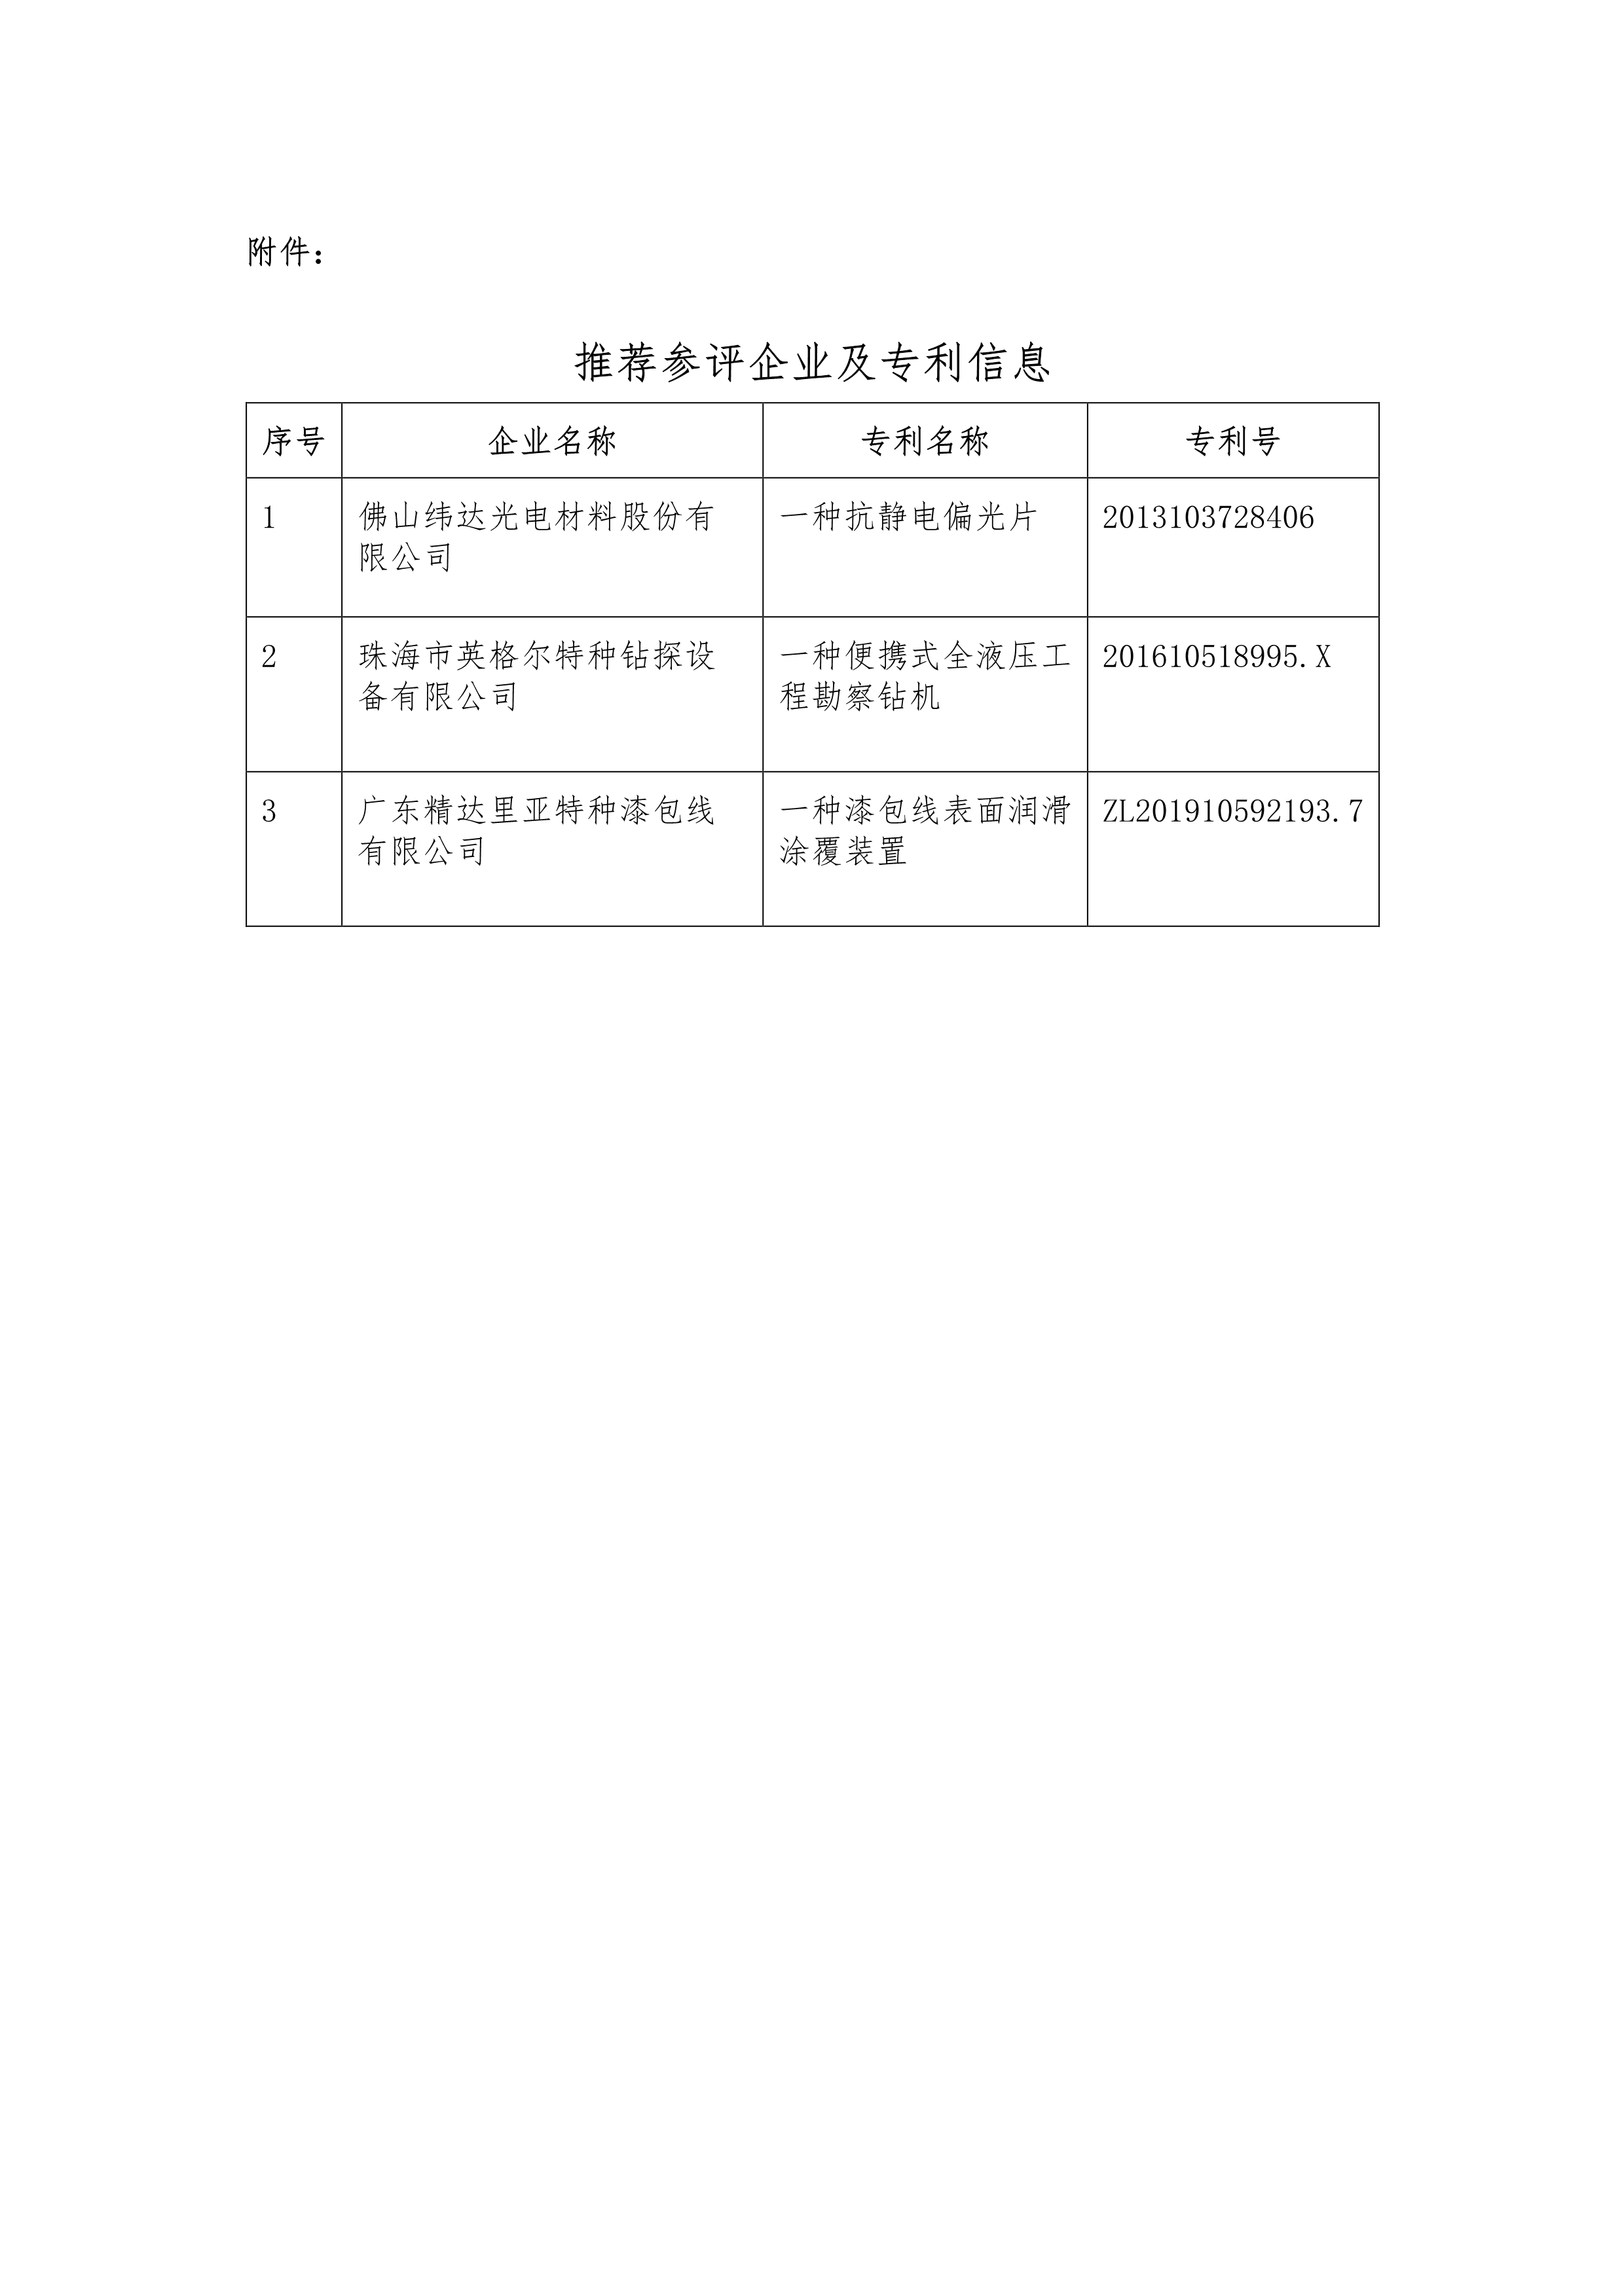 102711554507_0关于推荐参评第二十三届中国专利奖专利项目的公示_2.Jpeg